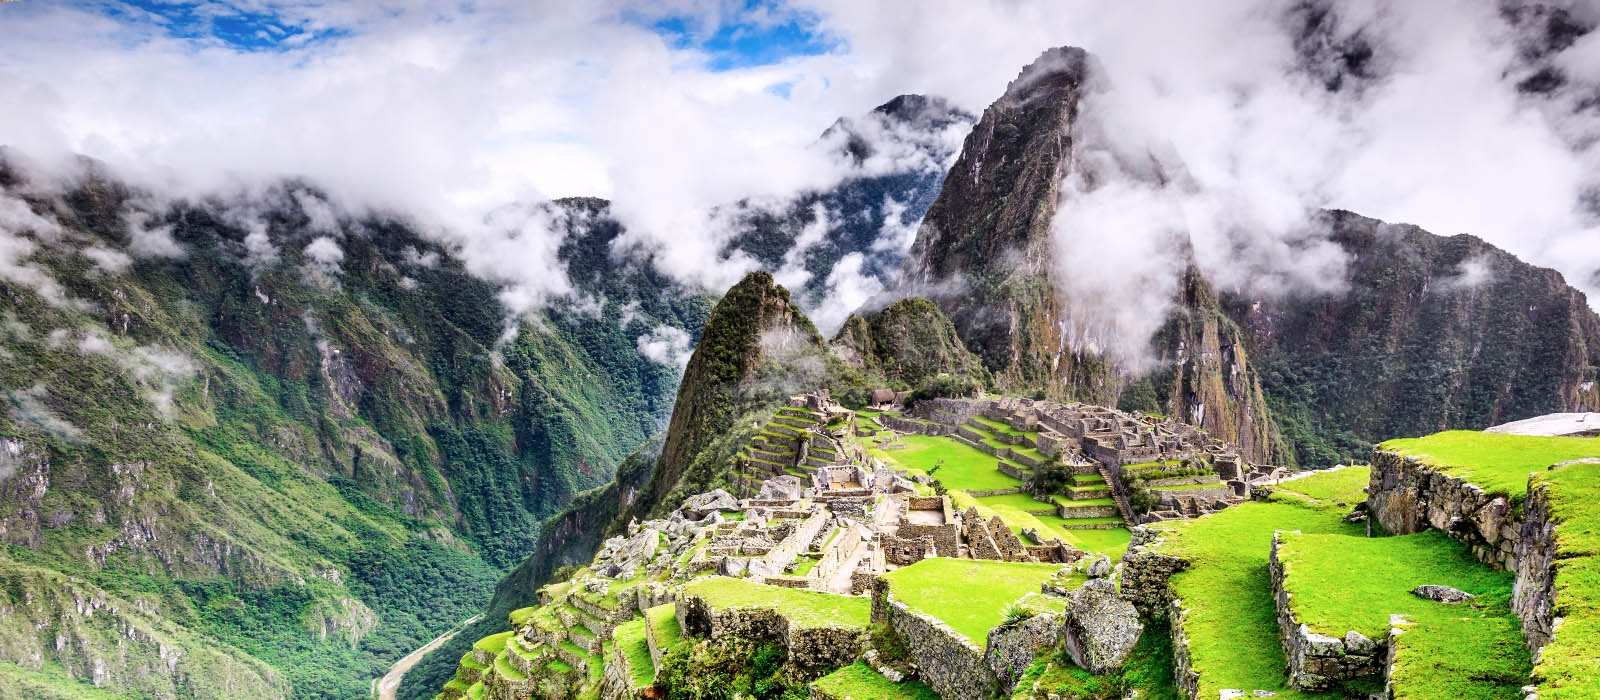 Machu Picchu citadel a Peruvian Treasure